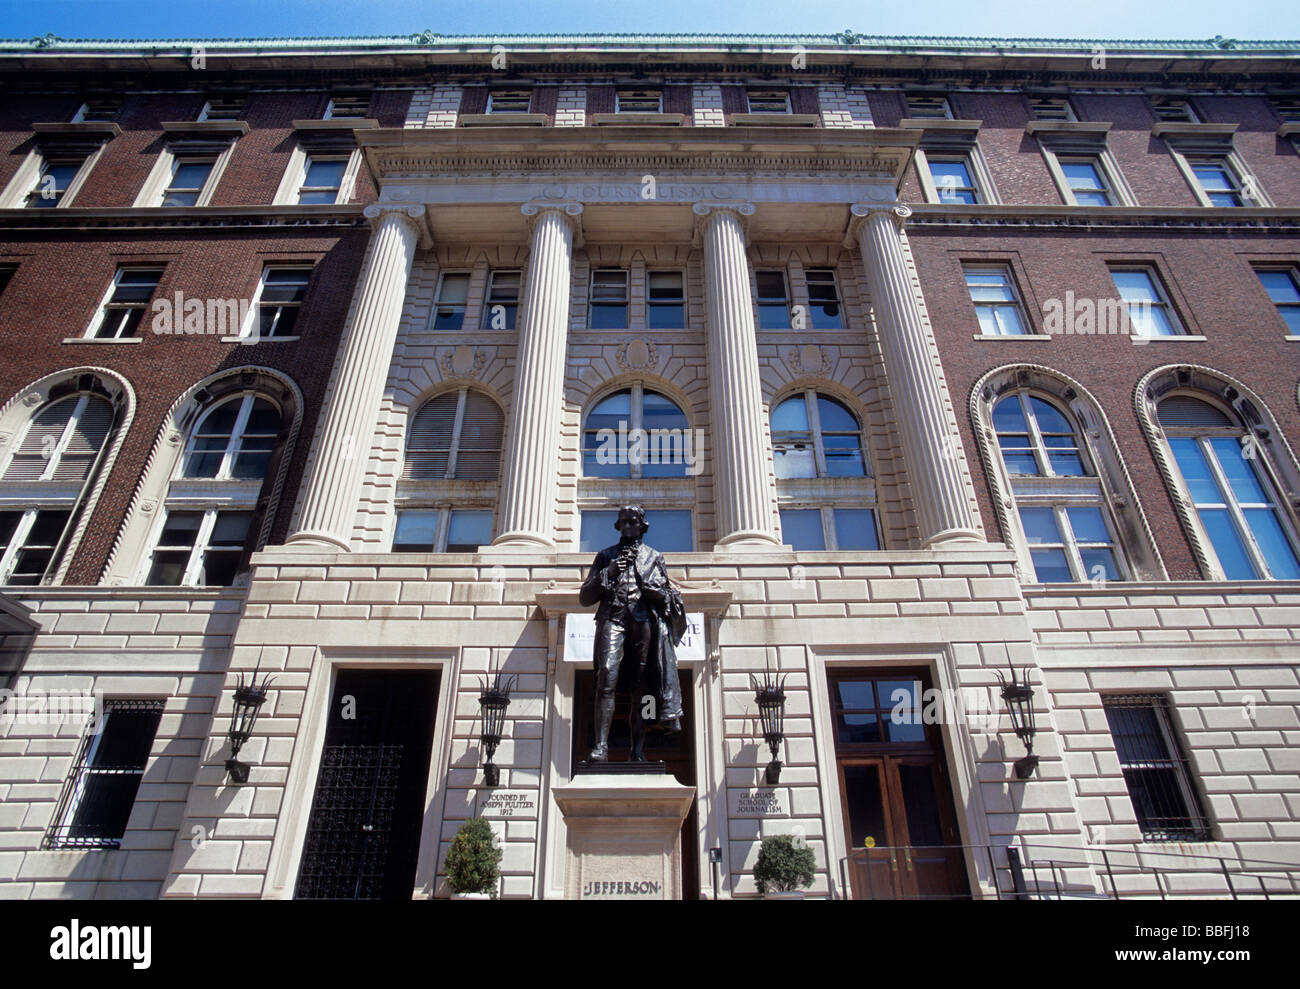 Universidad de Columbia, Nueva York. Edificio de la Escuela de Periodismo de Columbia en el campus. Morningside Heights, Amsterdam Avenue. Foto de stock